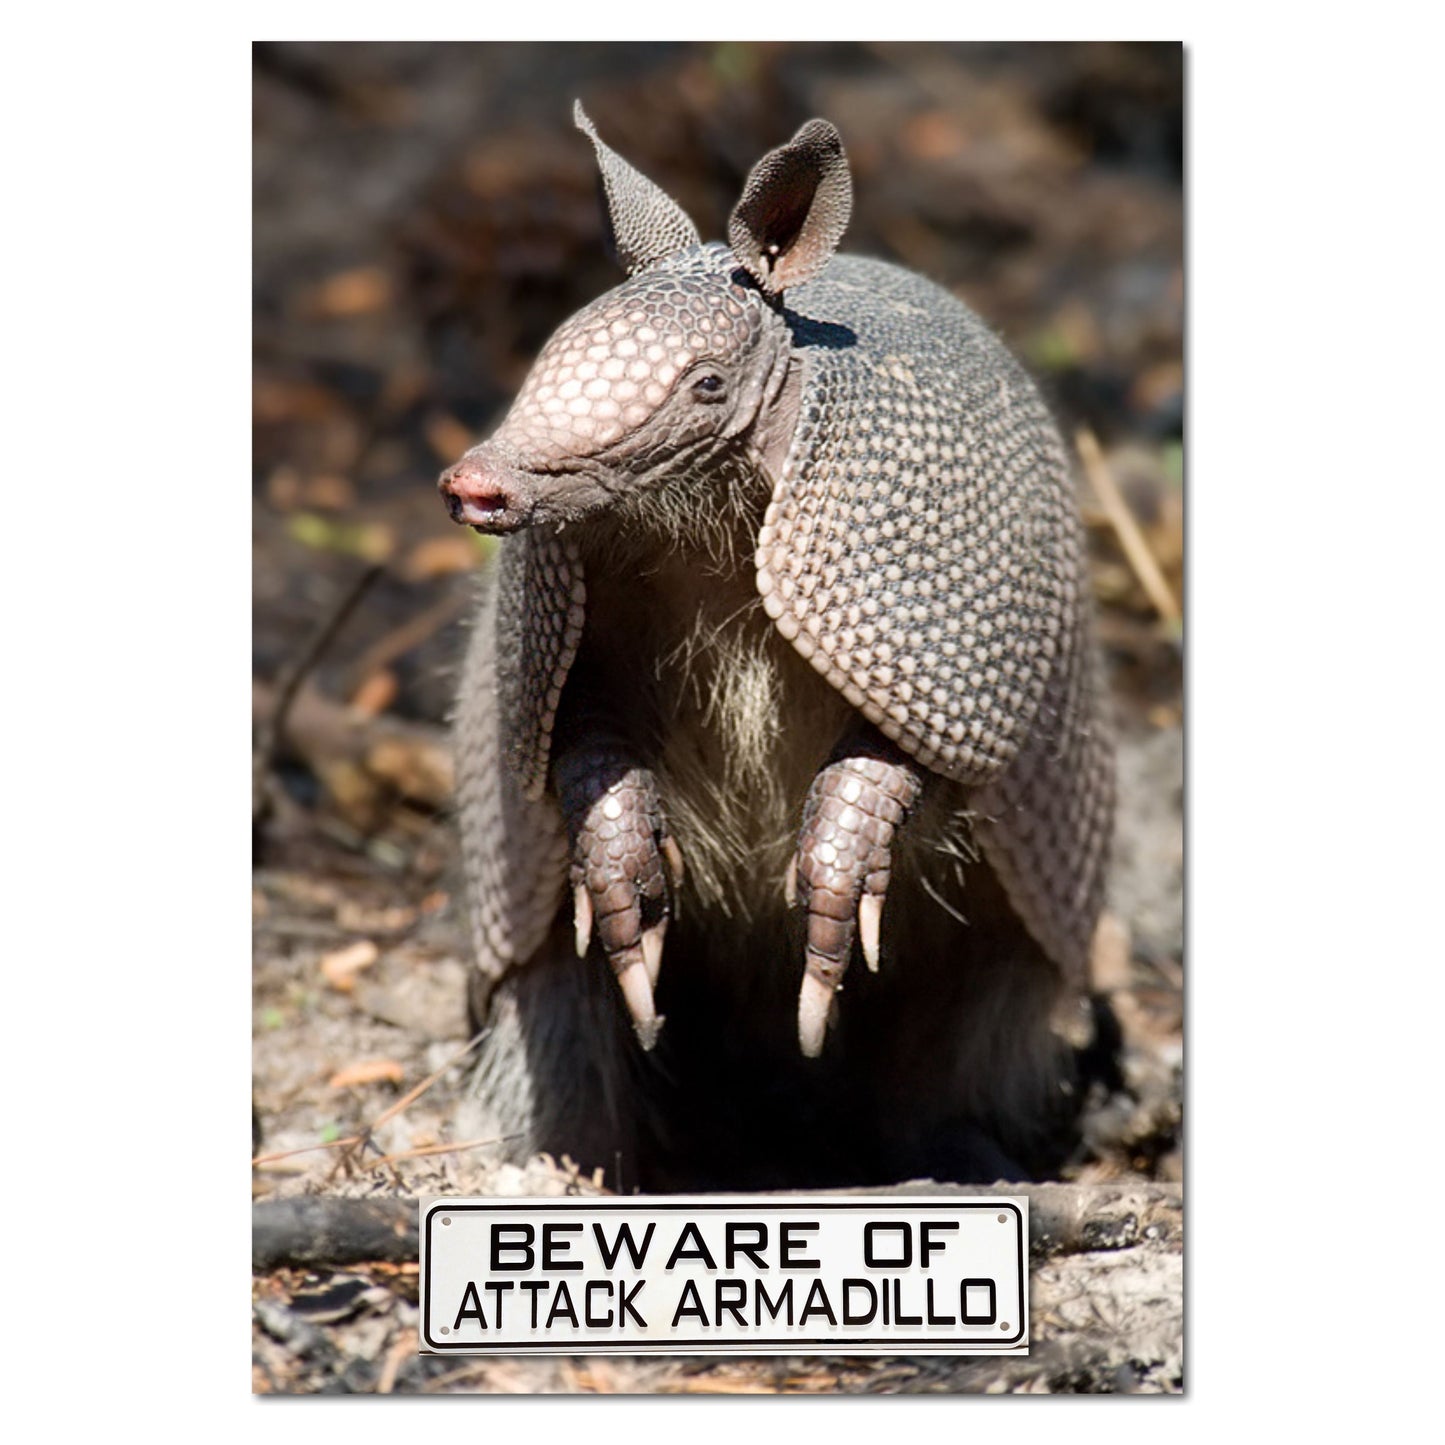 Beware of Attack Armadillo Sign Solid Plastic 12 X 3